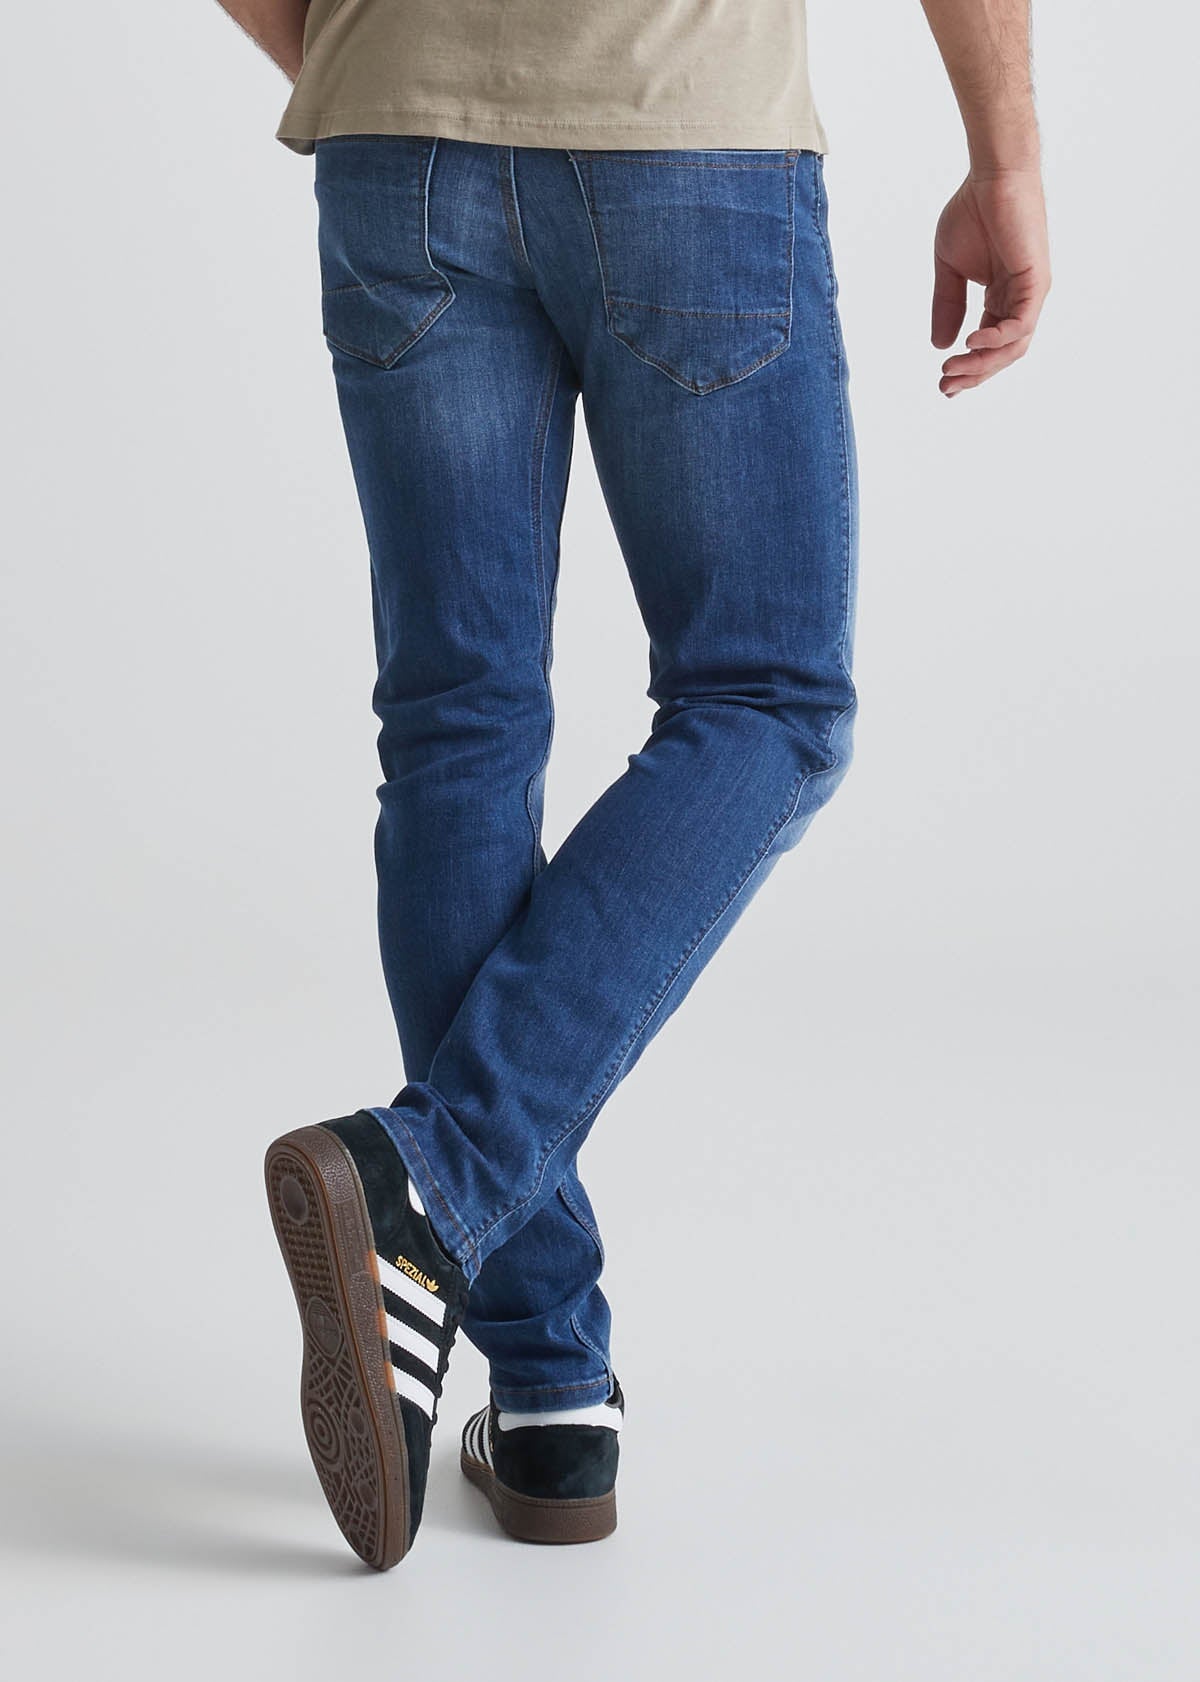 Denim Slim Fit Jeans For Men Heavy Stretchable Jeans Blue Pant, Blue  Colour, 30 Size